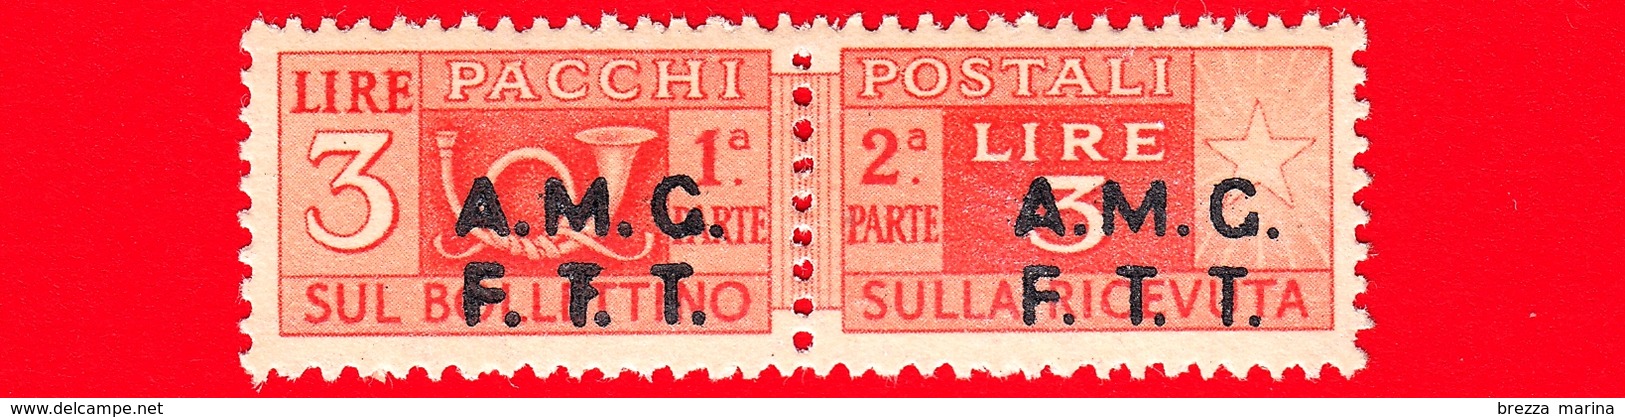 Nuovo - MNH - ITALIA - Trieste - AMG FTT - 1947-48 - Corno Di Posta, Soprastampa Su Due Righe - Pacchi Postali - 3 - Nuevos